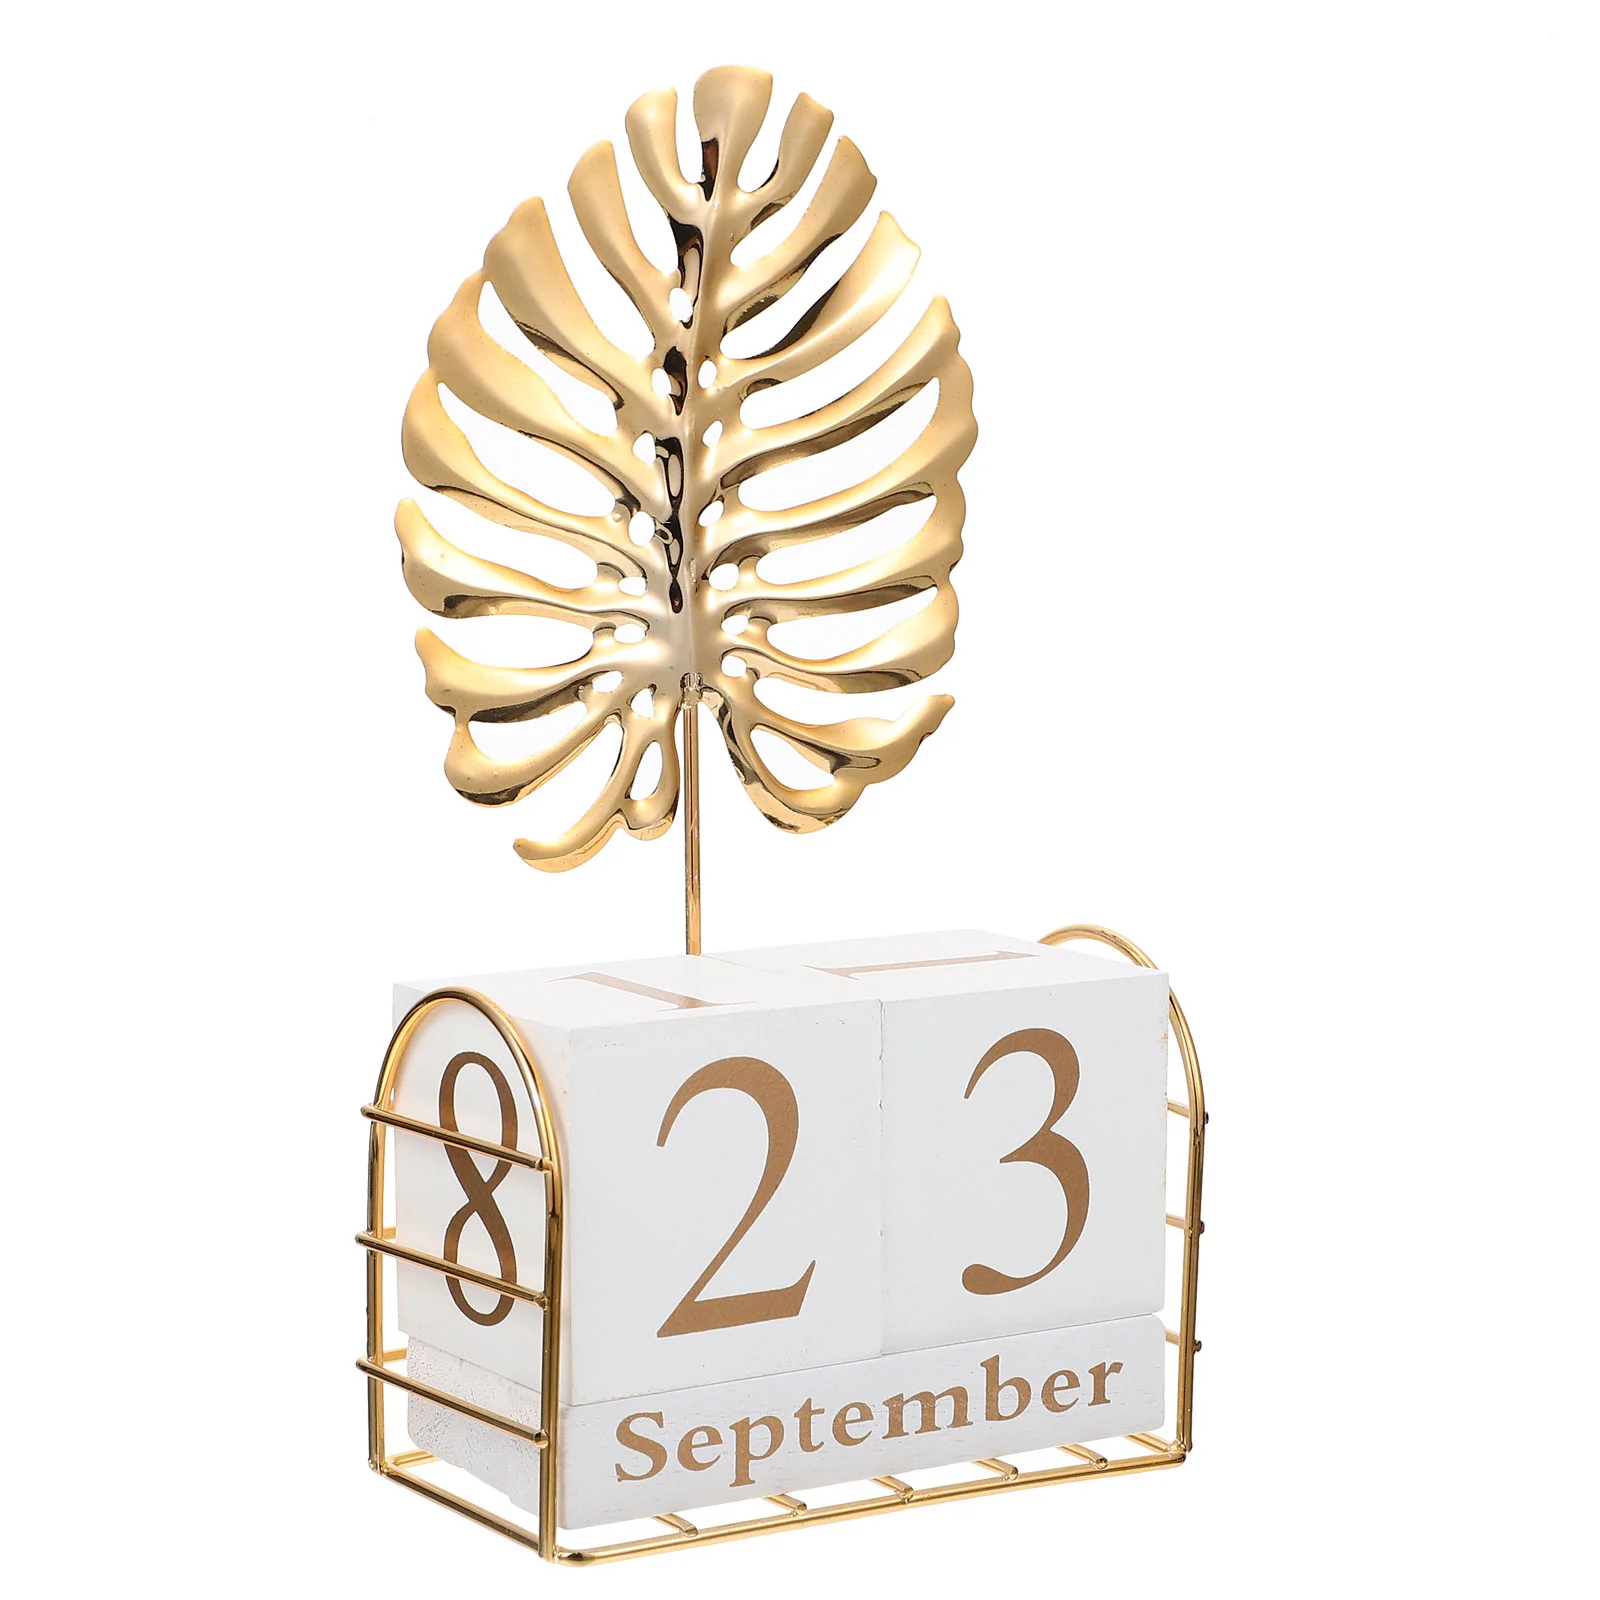 

Вечный календарь Garneck с деревянным блоком и металлической скульптурой в виде пальмовых листьев и раскладными страницами календаря для тропических тематических вечеринок